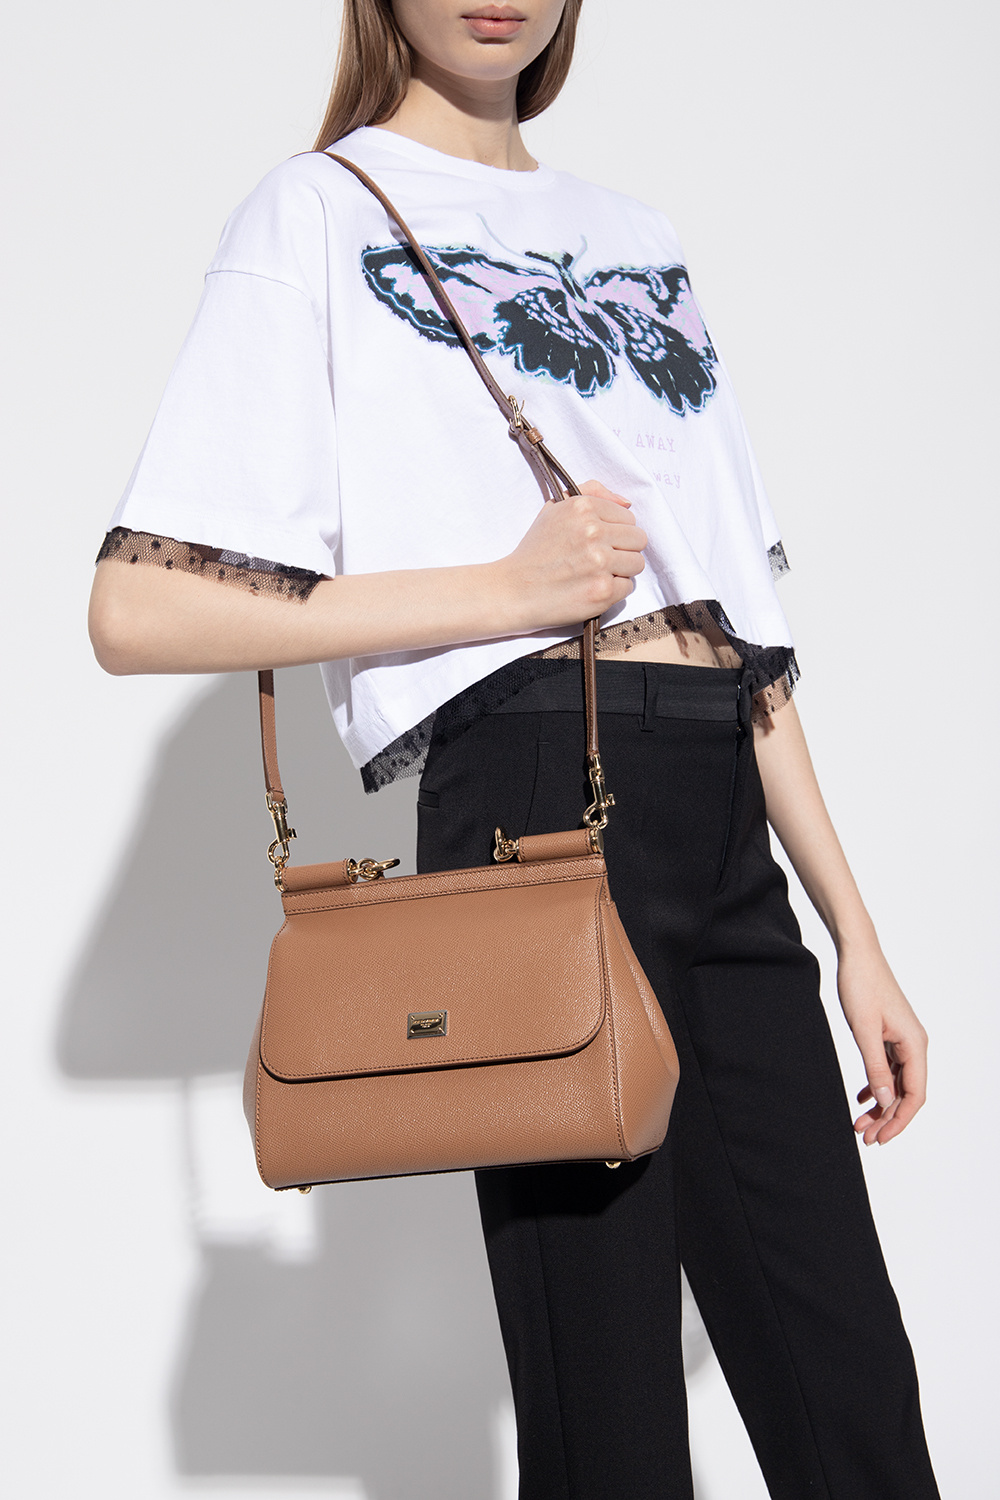 Dolce & Gabbana Small Sicily Shoulder Bag